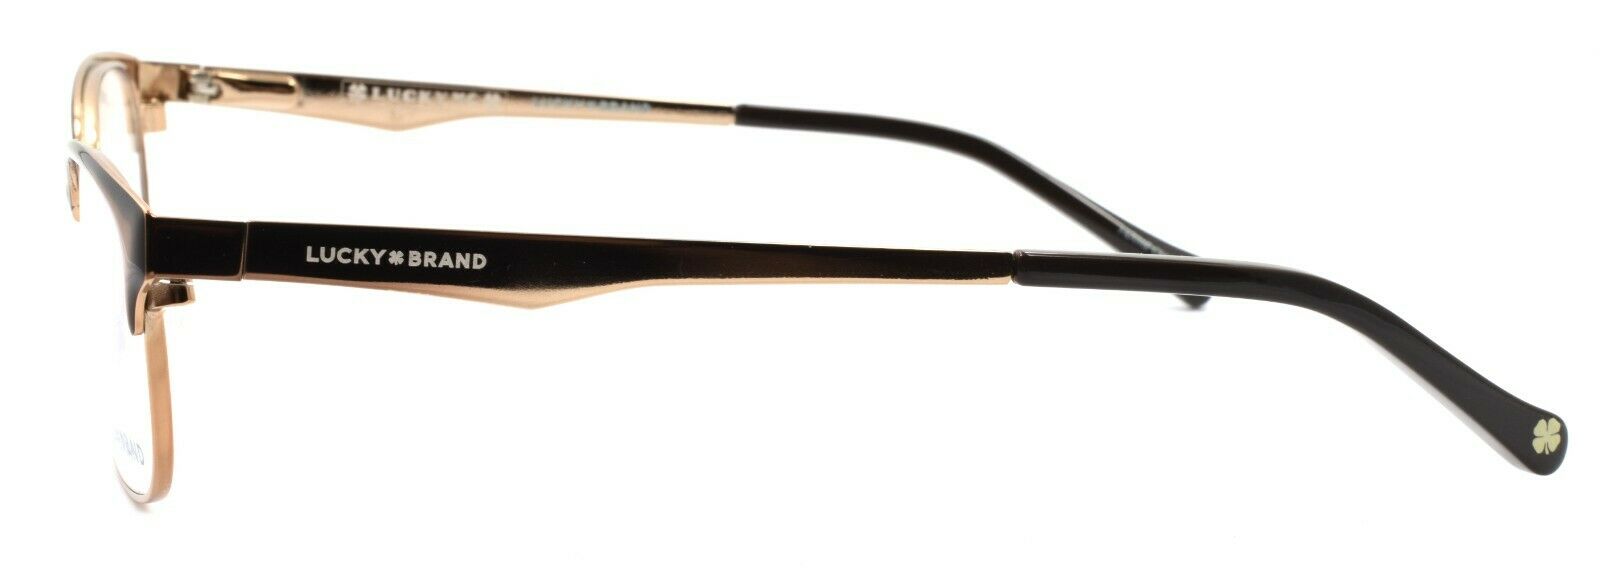 3-LUCKY BRAND D703 Kids Eyeglasses Frames 49-16-130 Light Brown-751286282177-IKSpecs